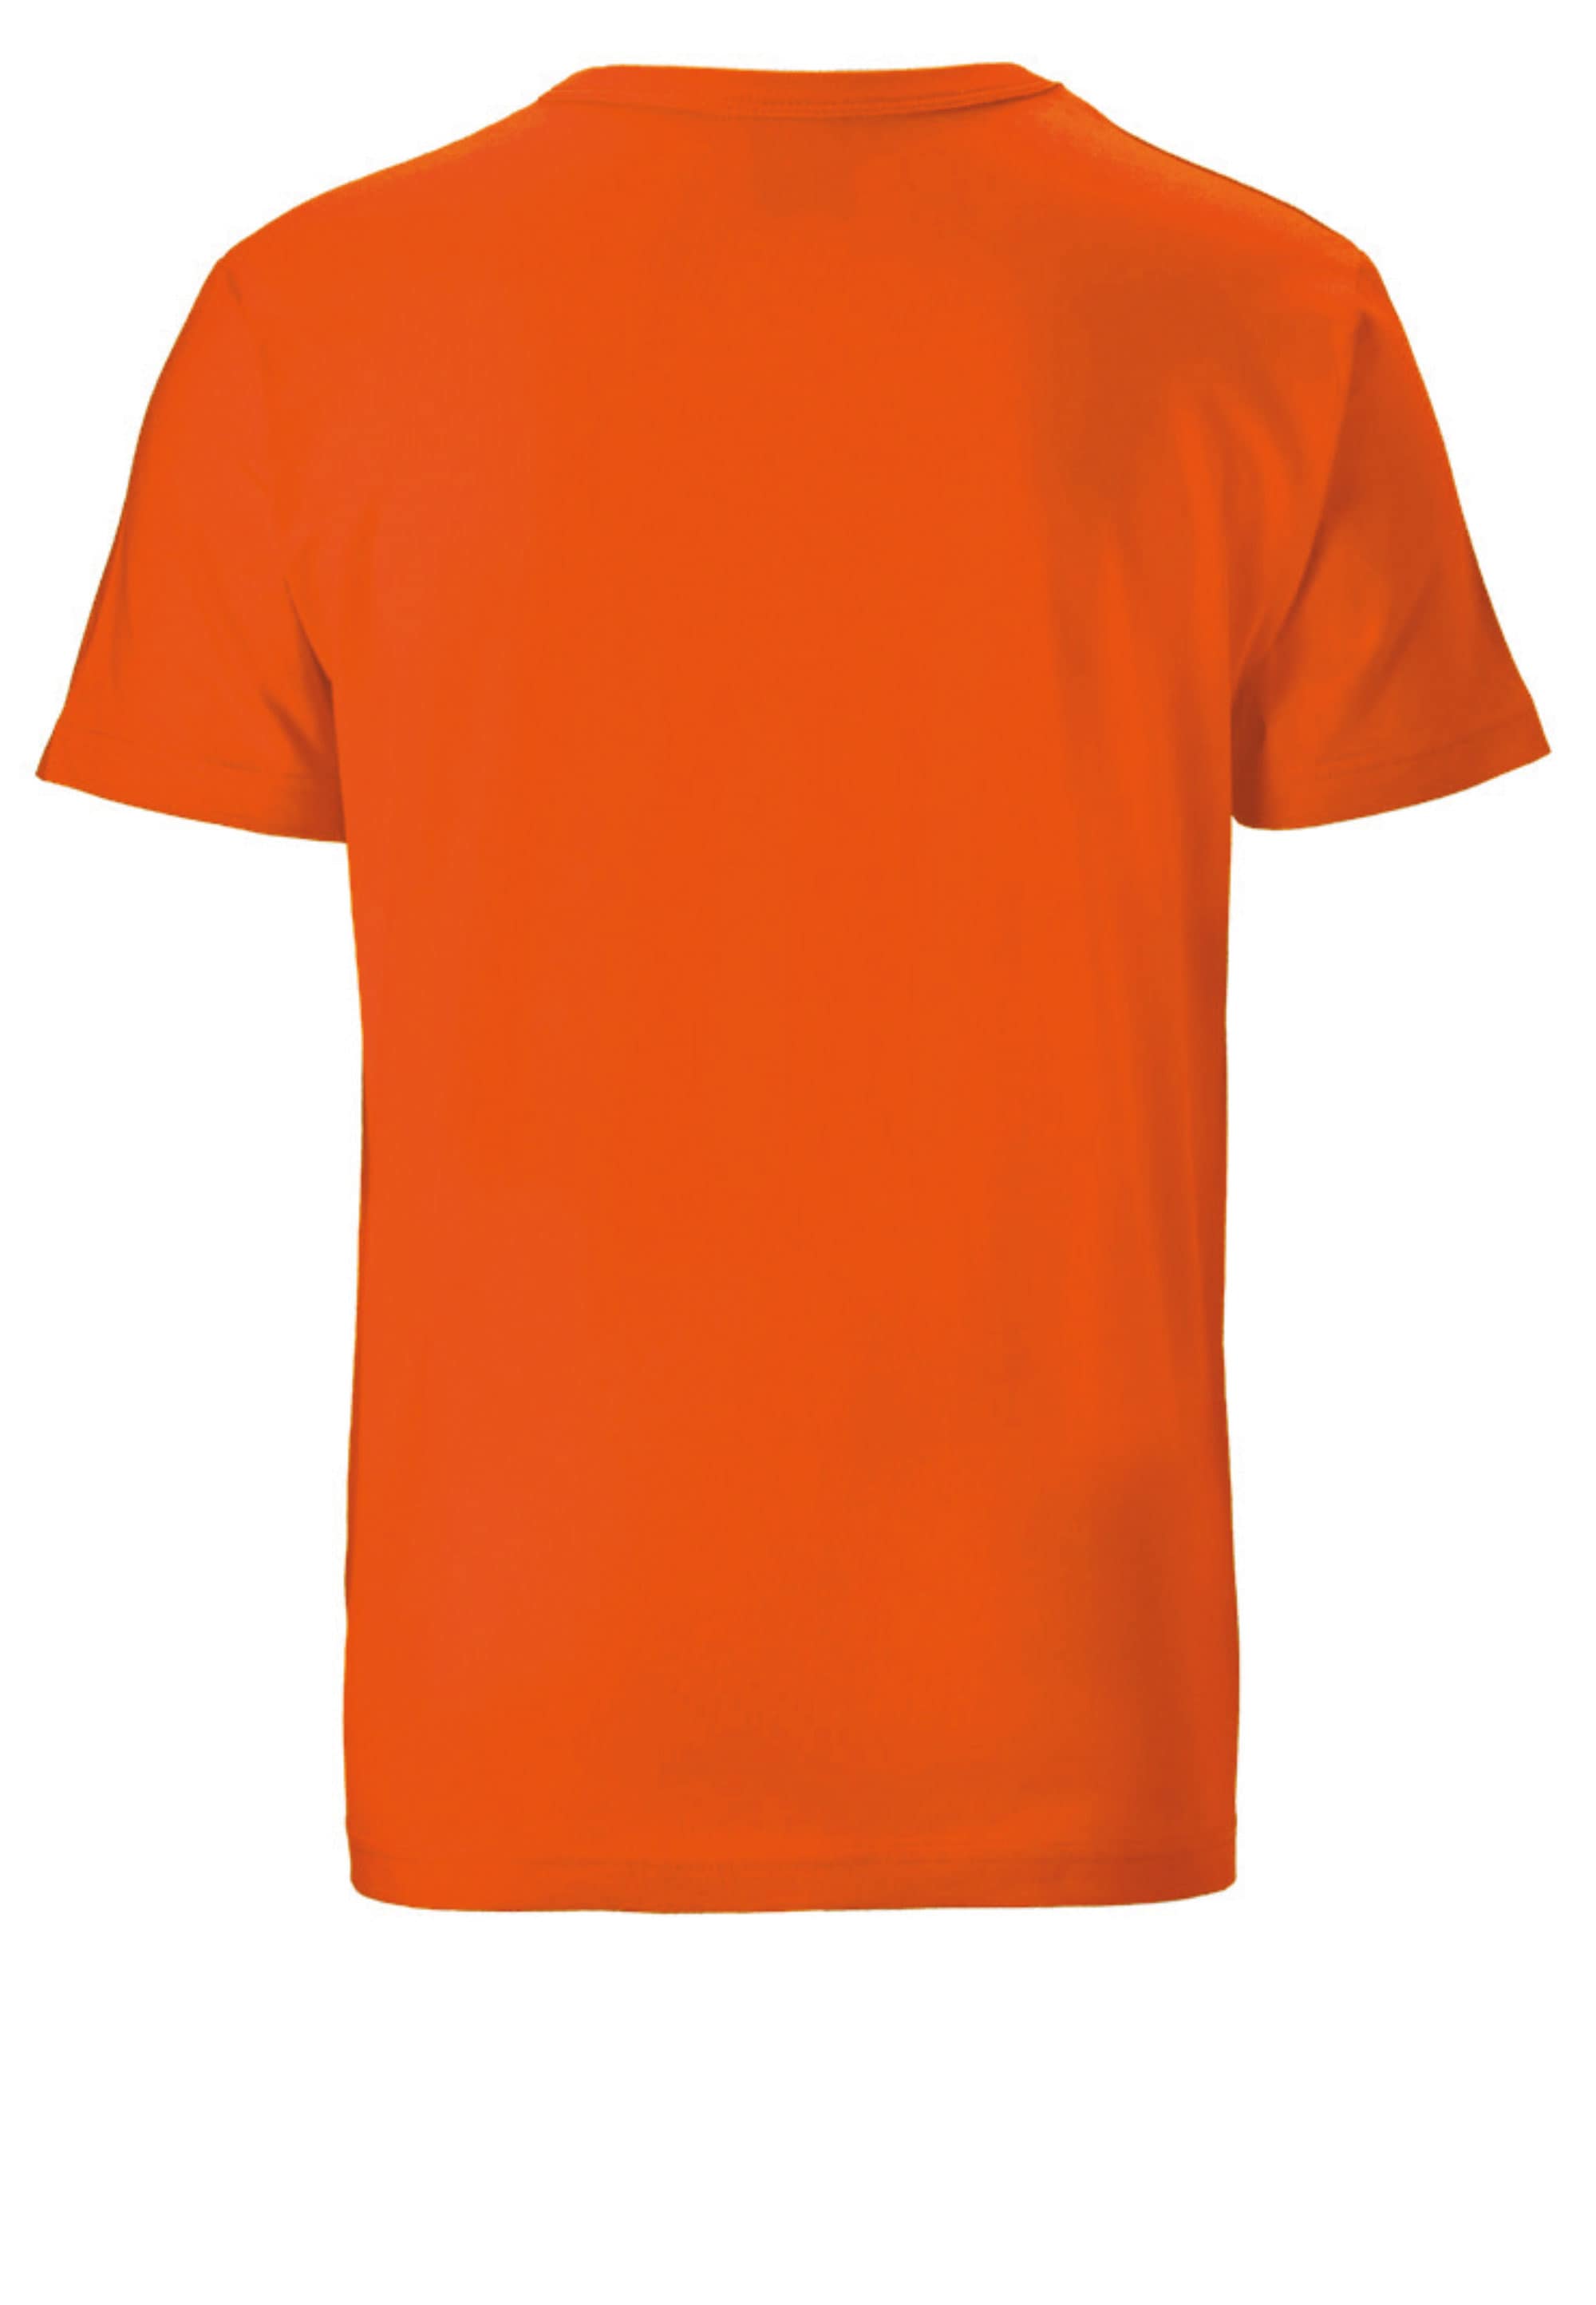 Originaldesign lizenziertem T-Shirt kaufen »Brandt«, LOGOSHIRT mit